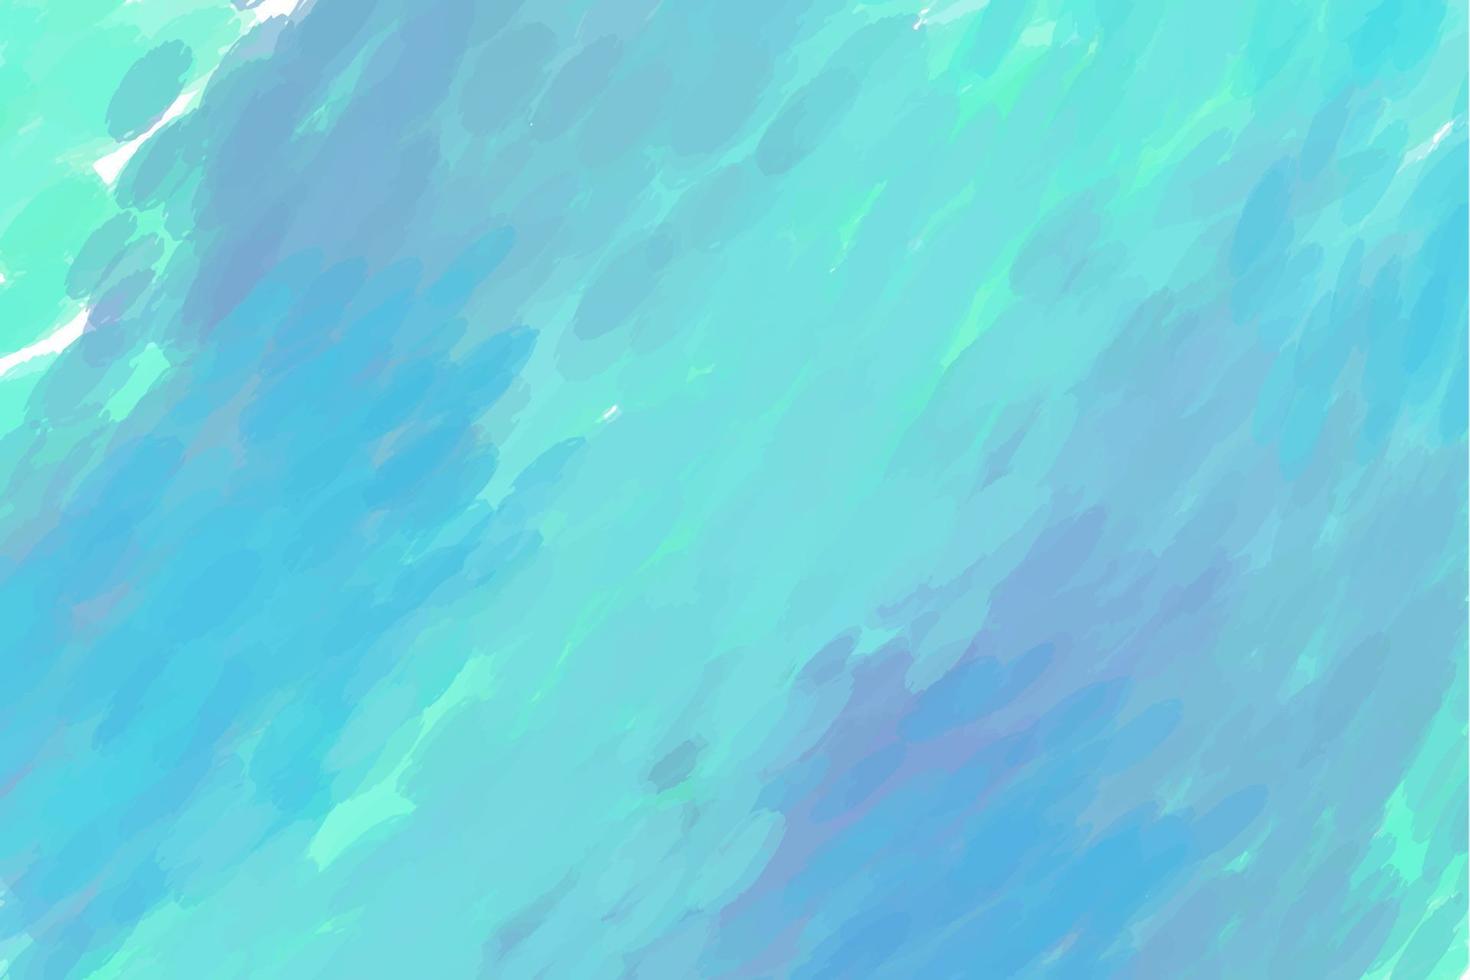 sfondo acquerello nei toni del blu con tratti pronunciati, acquamarina vettore